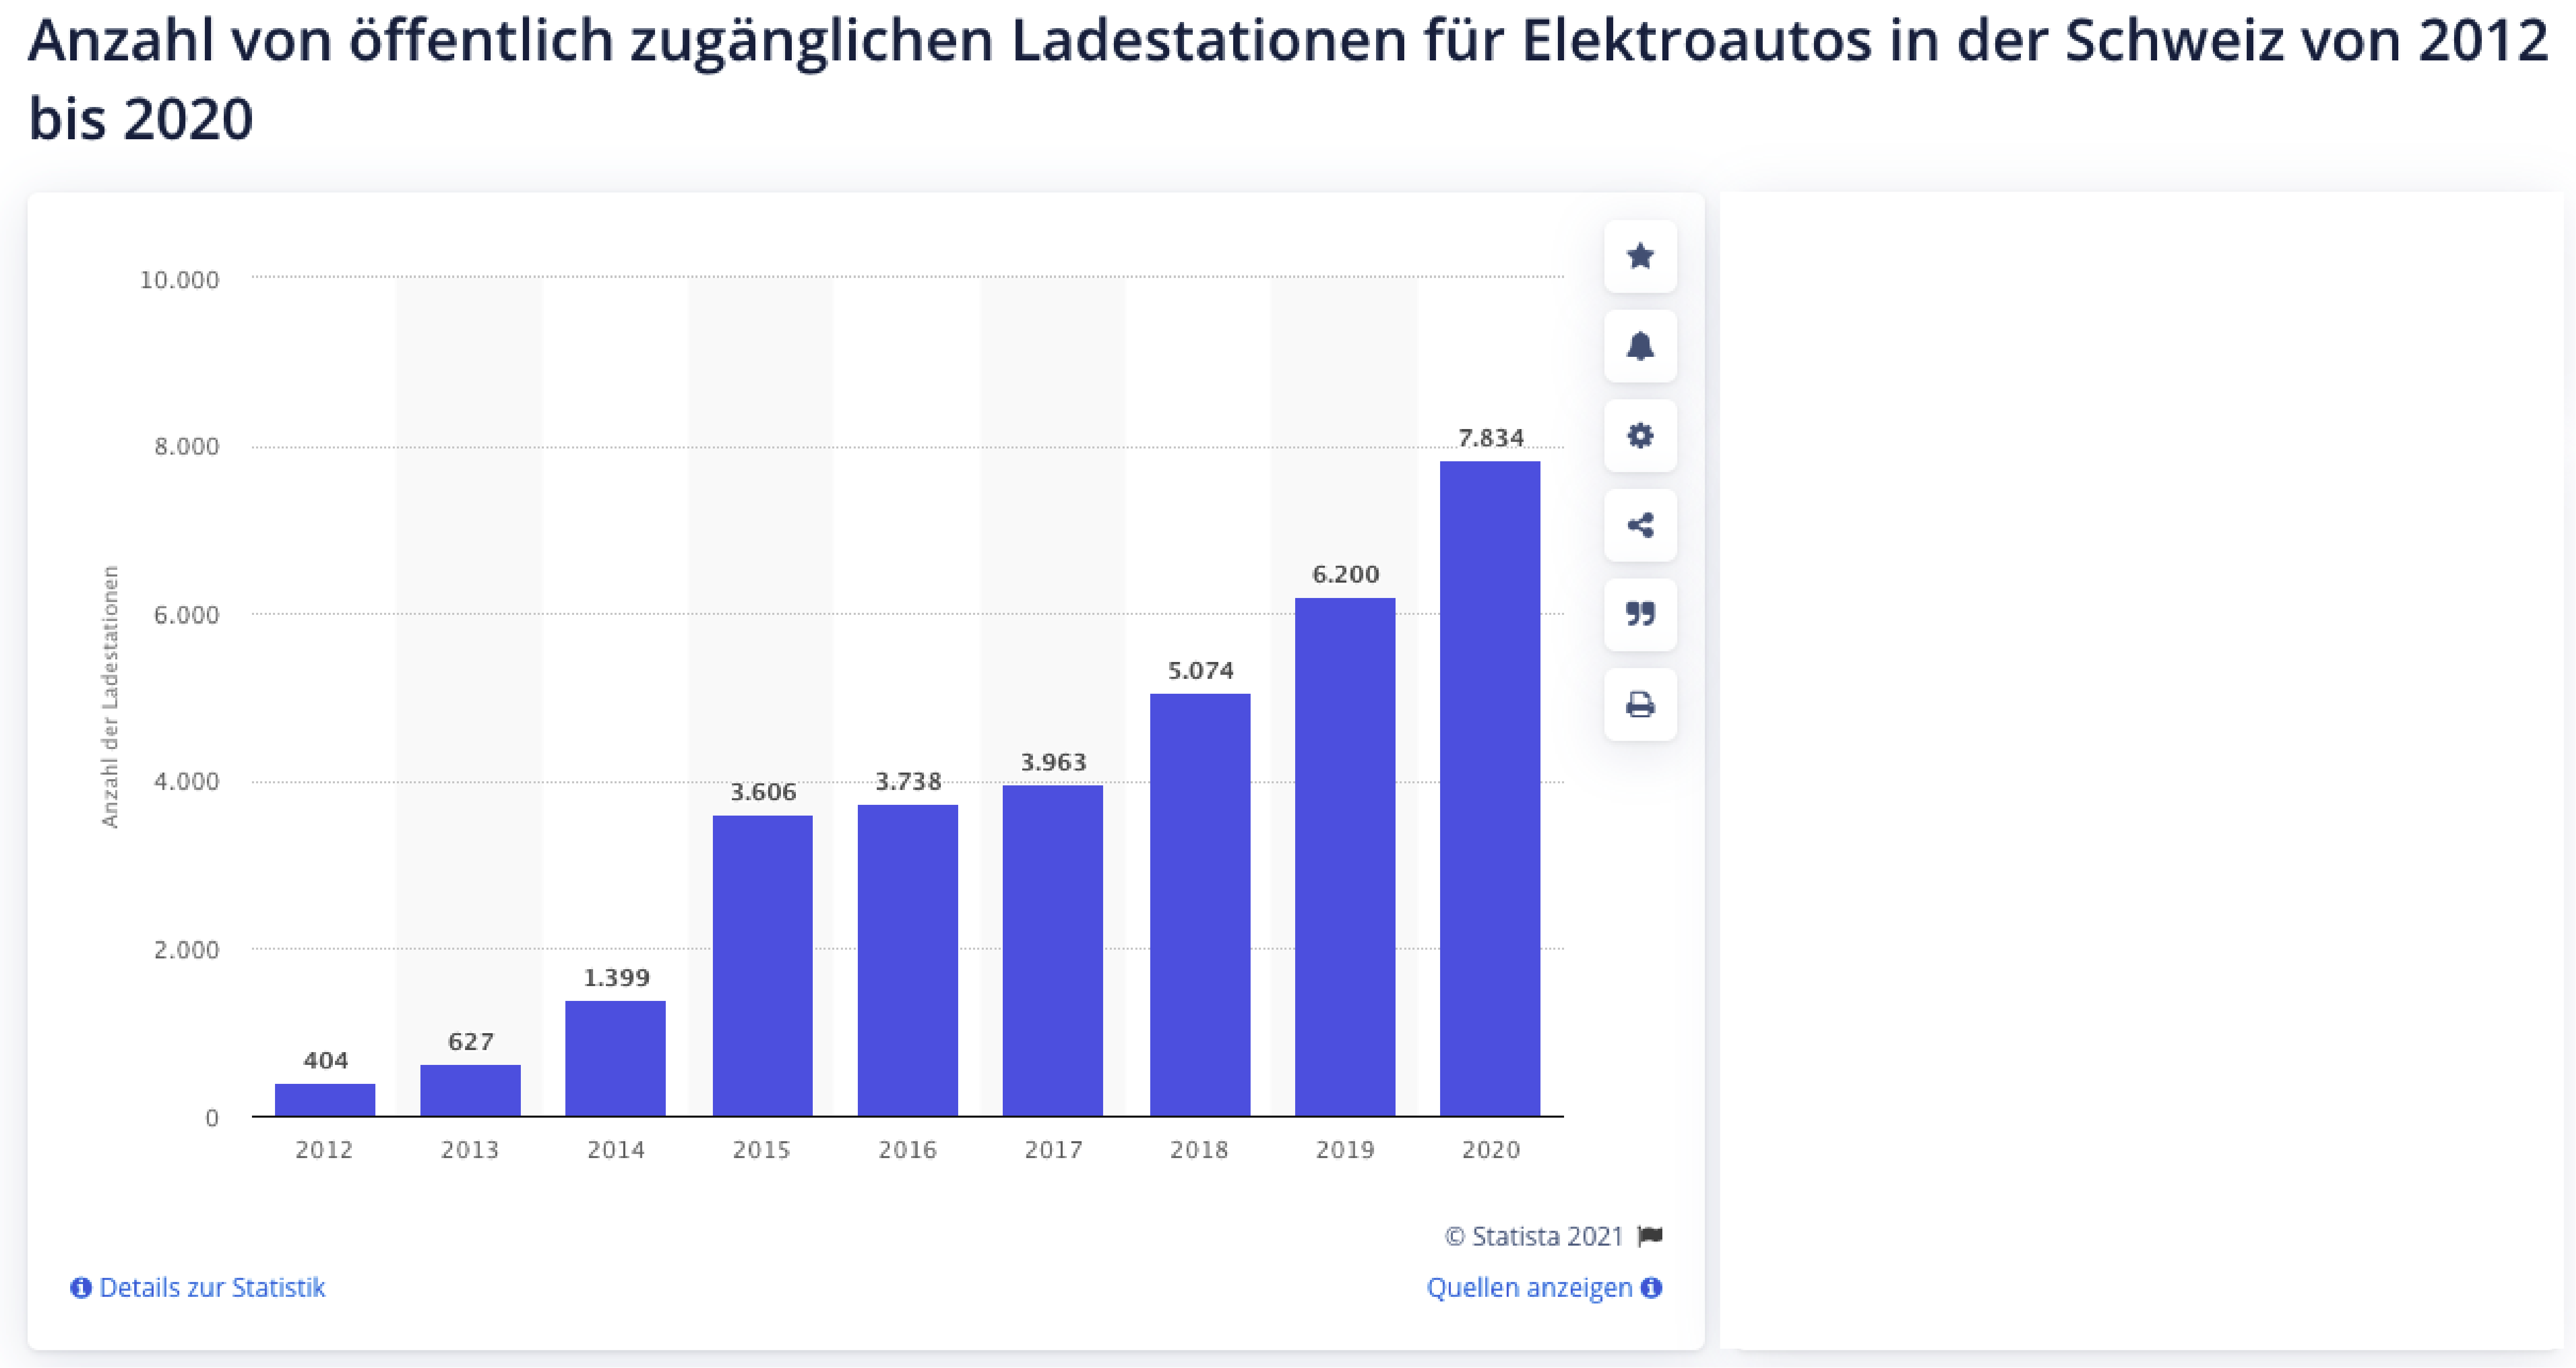 Ladestationen in der Schweiz - statista.com Quelle